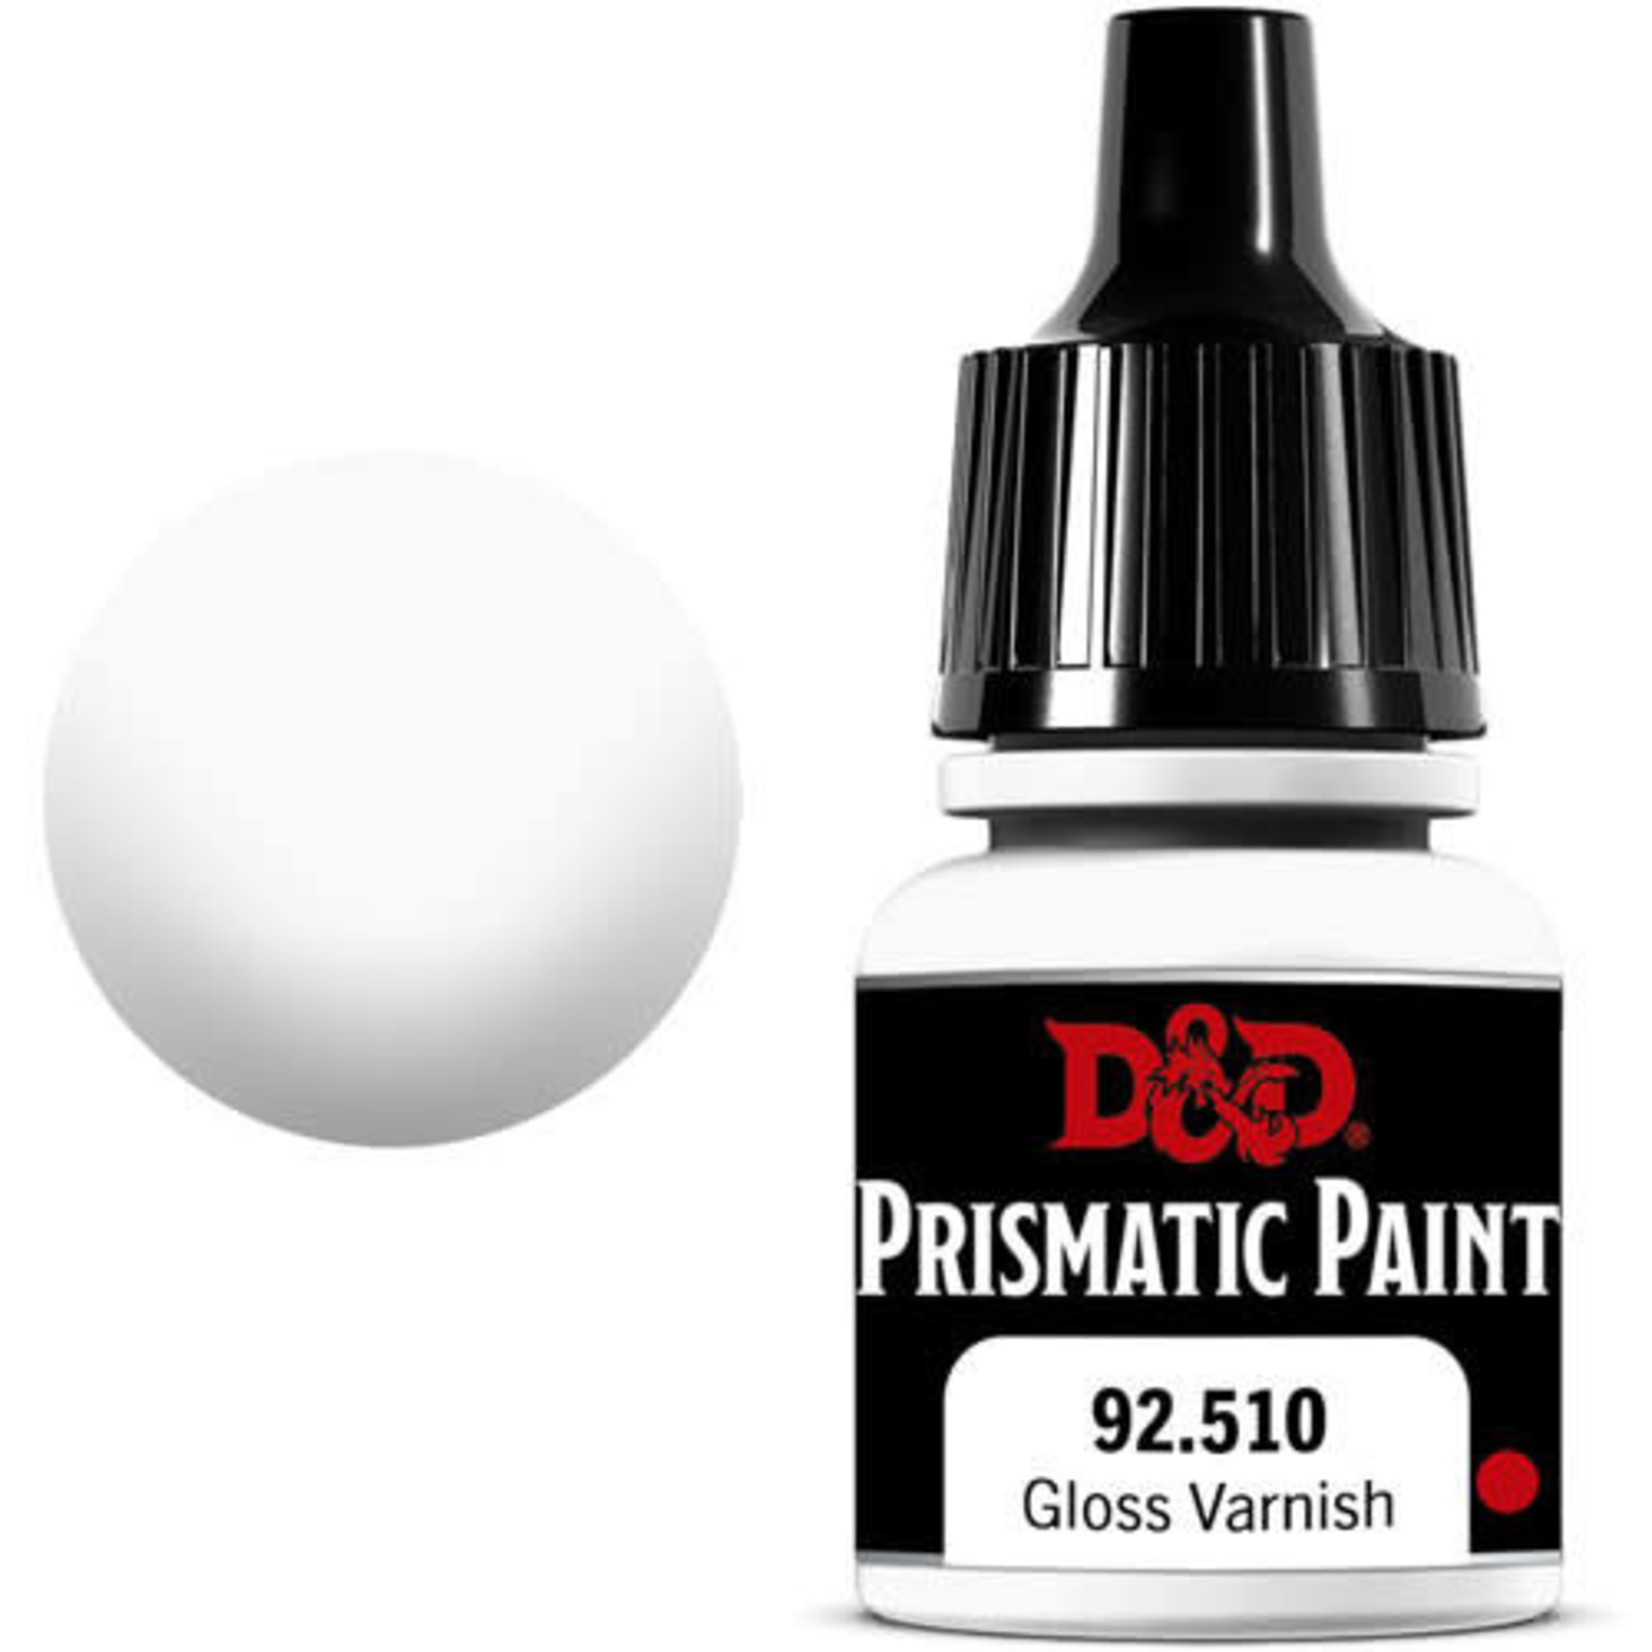 WIZKIDS/NECA D&D Prismatic Paint: Gloss Varnish 92.510